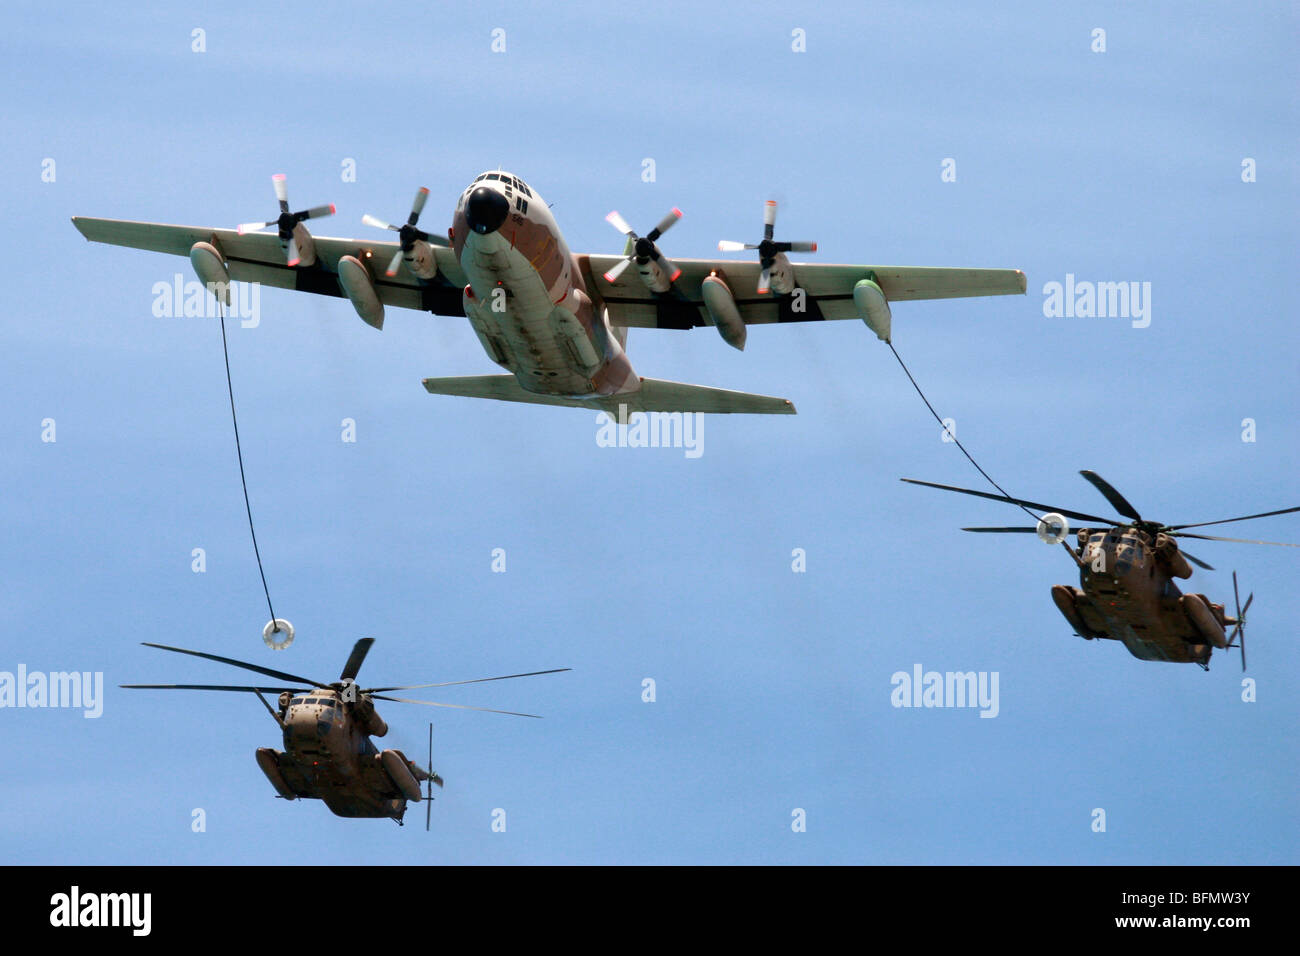 Israelische Luftwaffe c-130 Herkules Transportflugzeug Betankung zwei Sikorsky CH-53 Hubschrauber im Flug Stockfoto